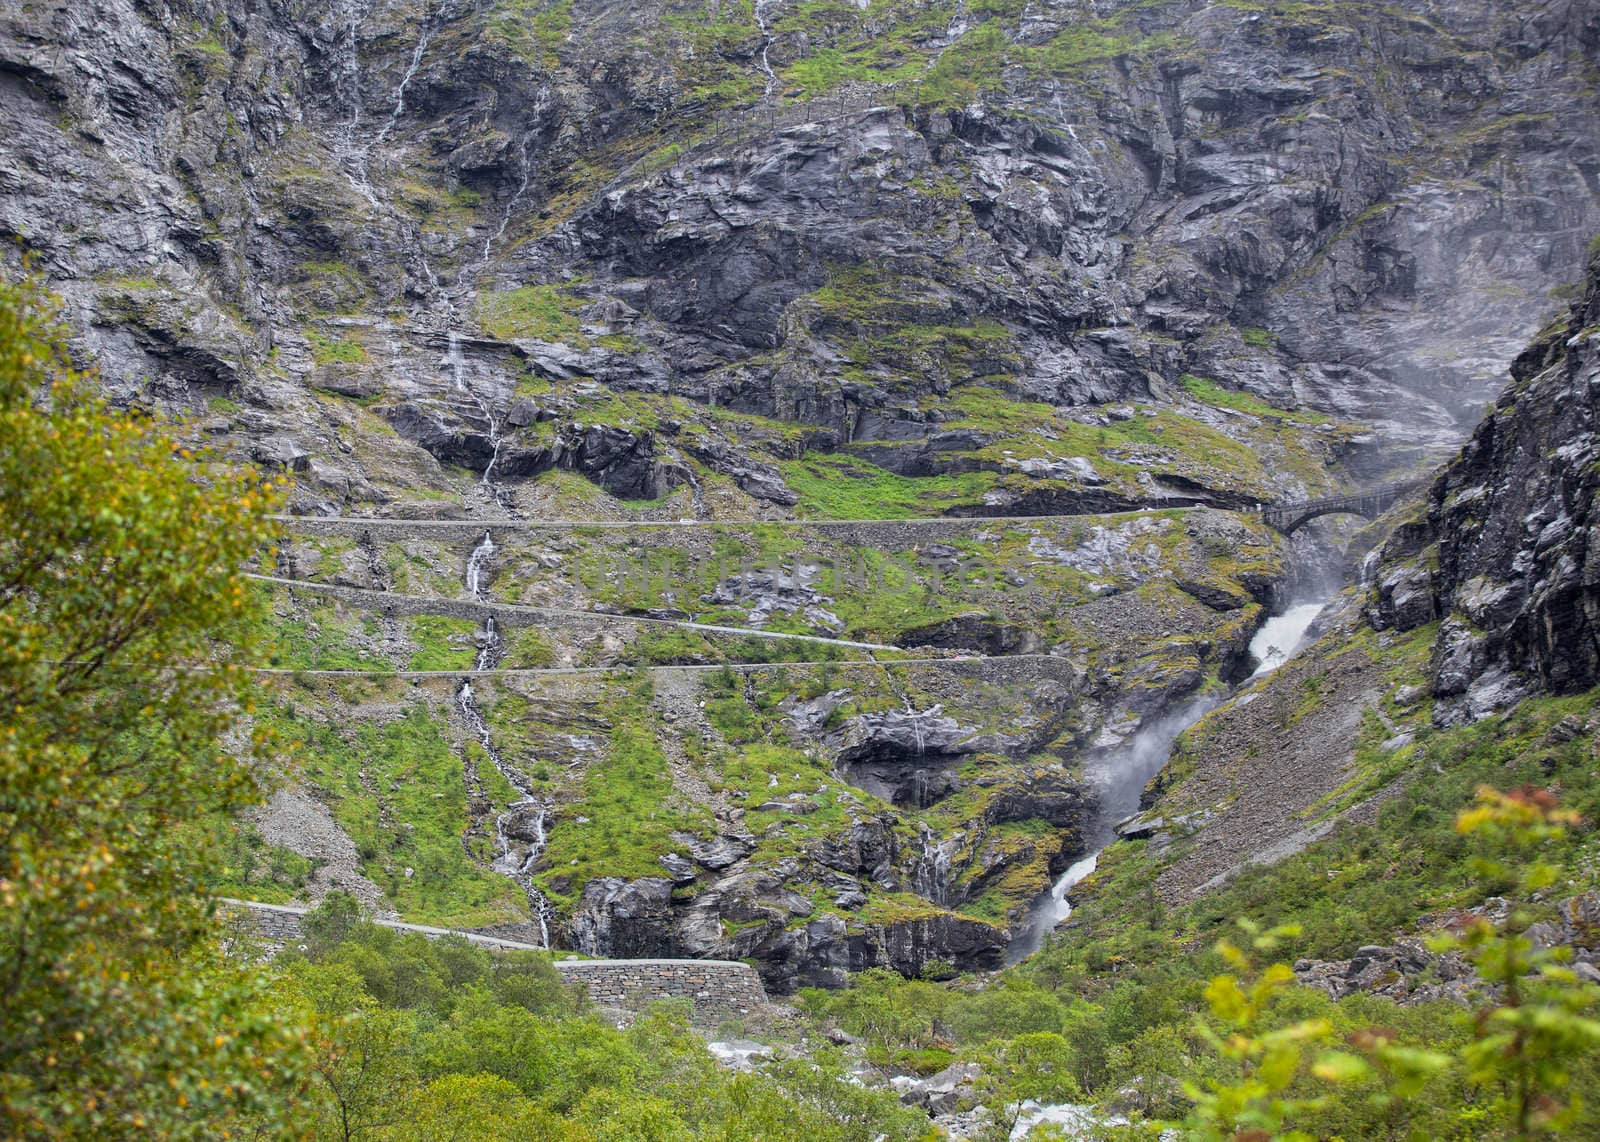 Trollstigen in Norway, the famous road photographed from below